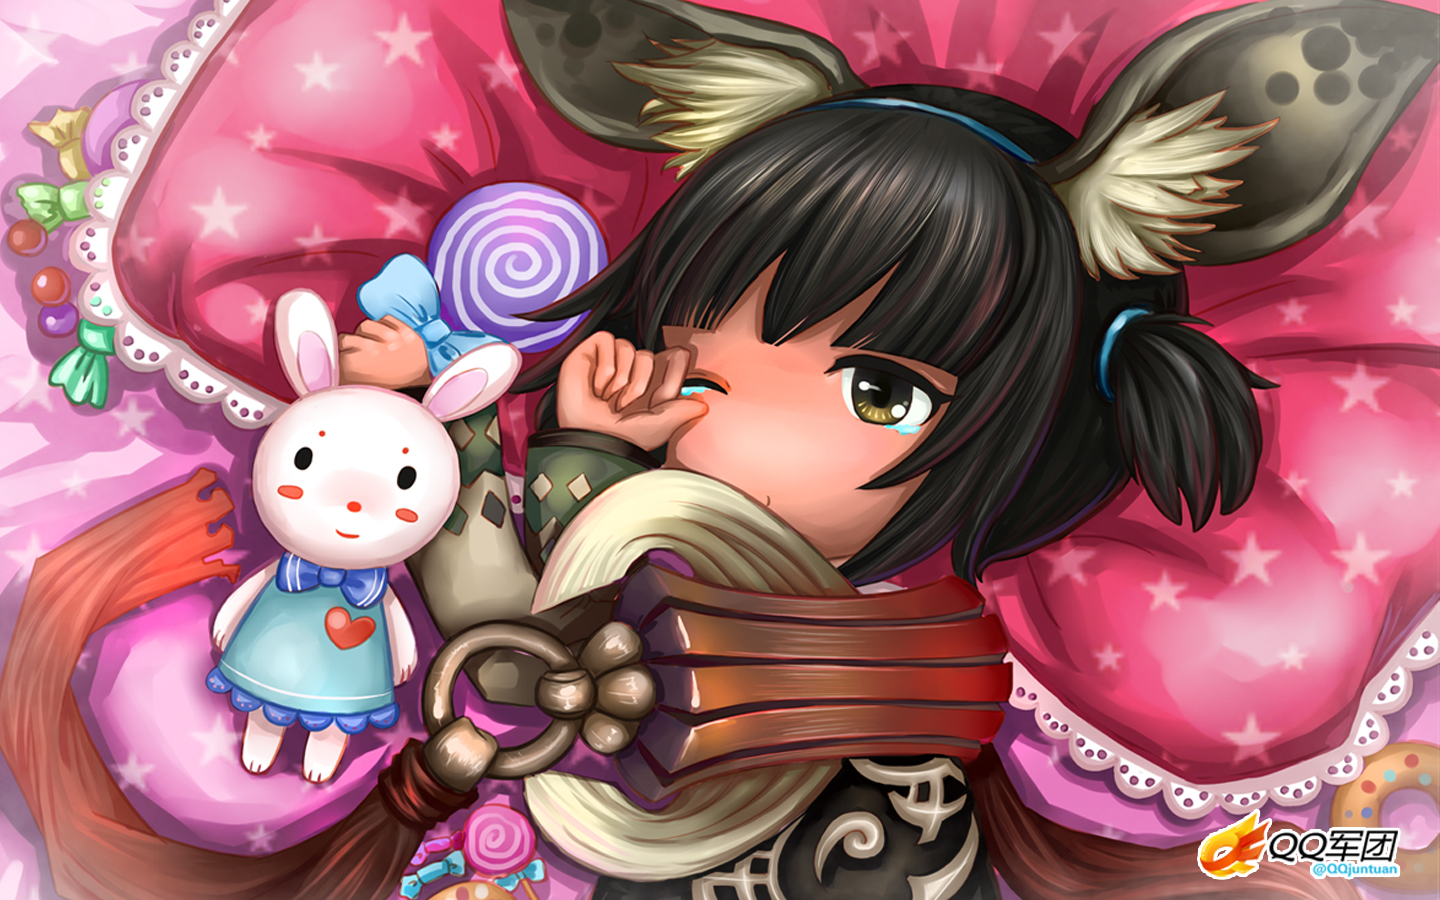 这才是萌萝莉 身着花仙子时装的灵族少女_《剑灵》专题站_17173.com中国游戏第一门户站